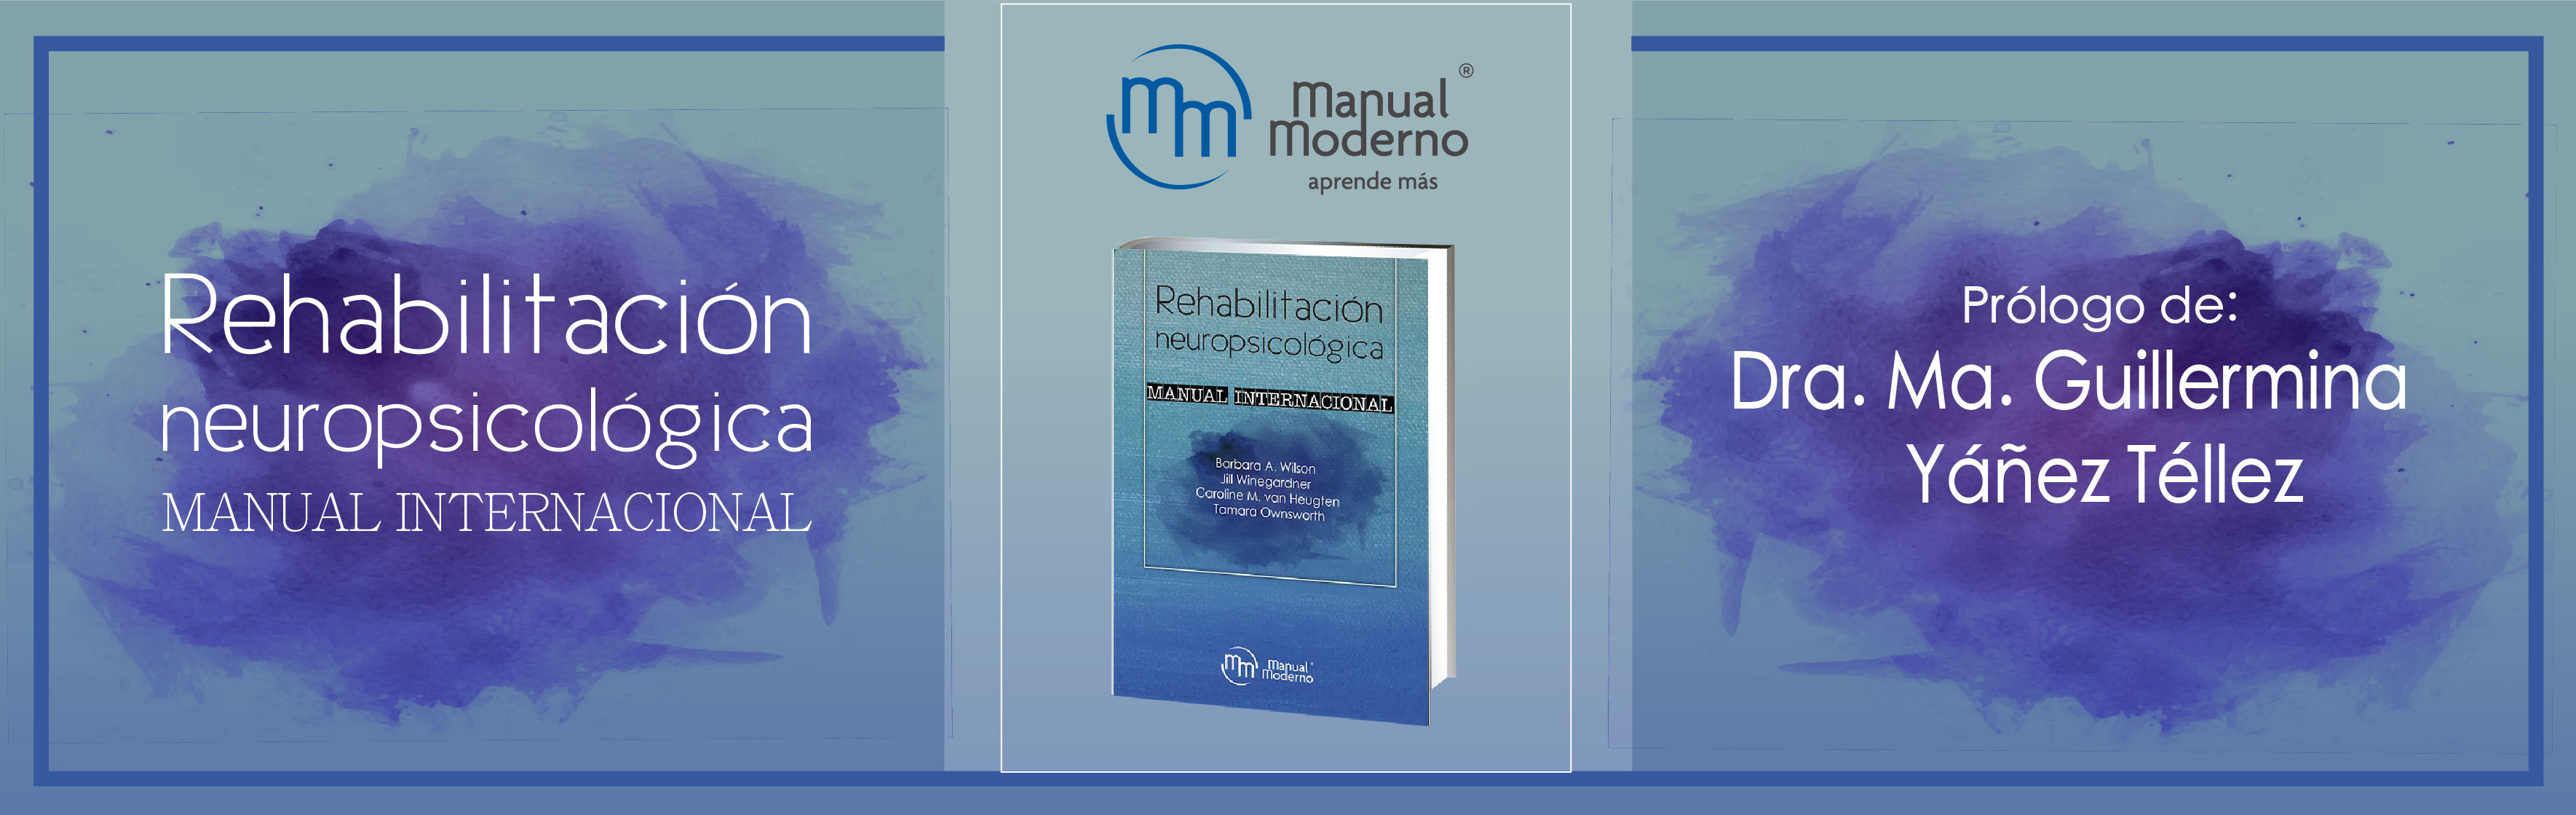 Prólogo de la obra: Rehabilitación neuropsicológica. Manual internacional